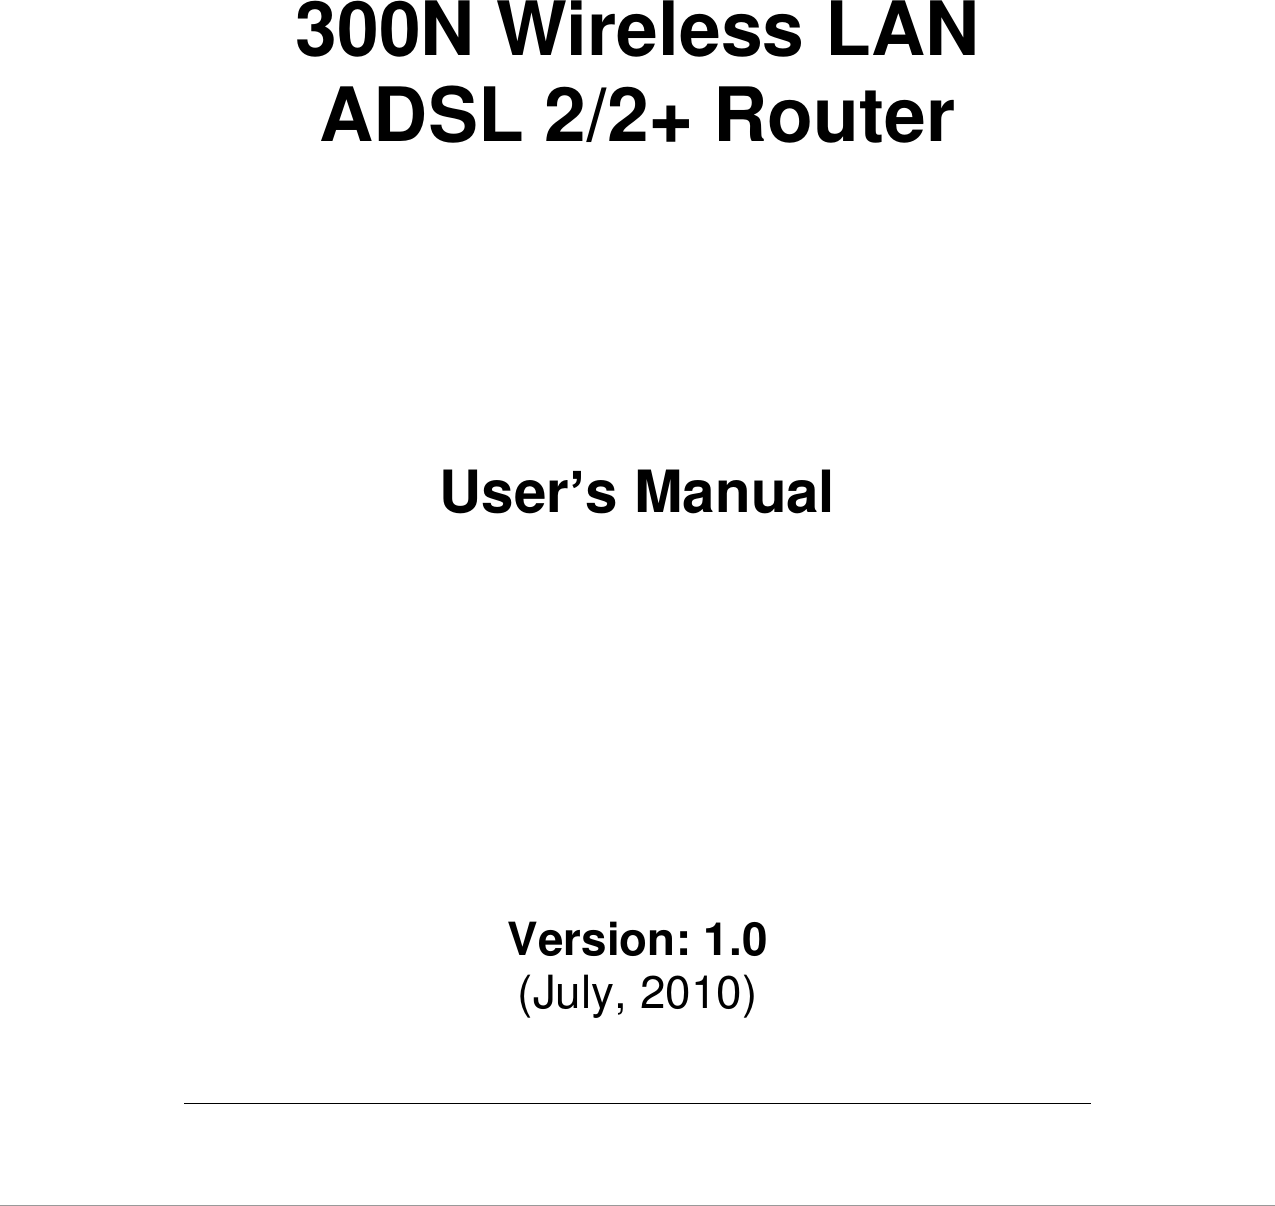        300N Wireless LAN ADSL 2/2+ Router         User’s Manual          Version: 1.0 (July, 2010)  